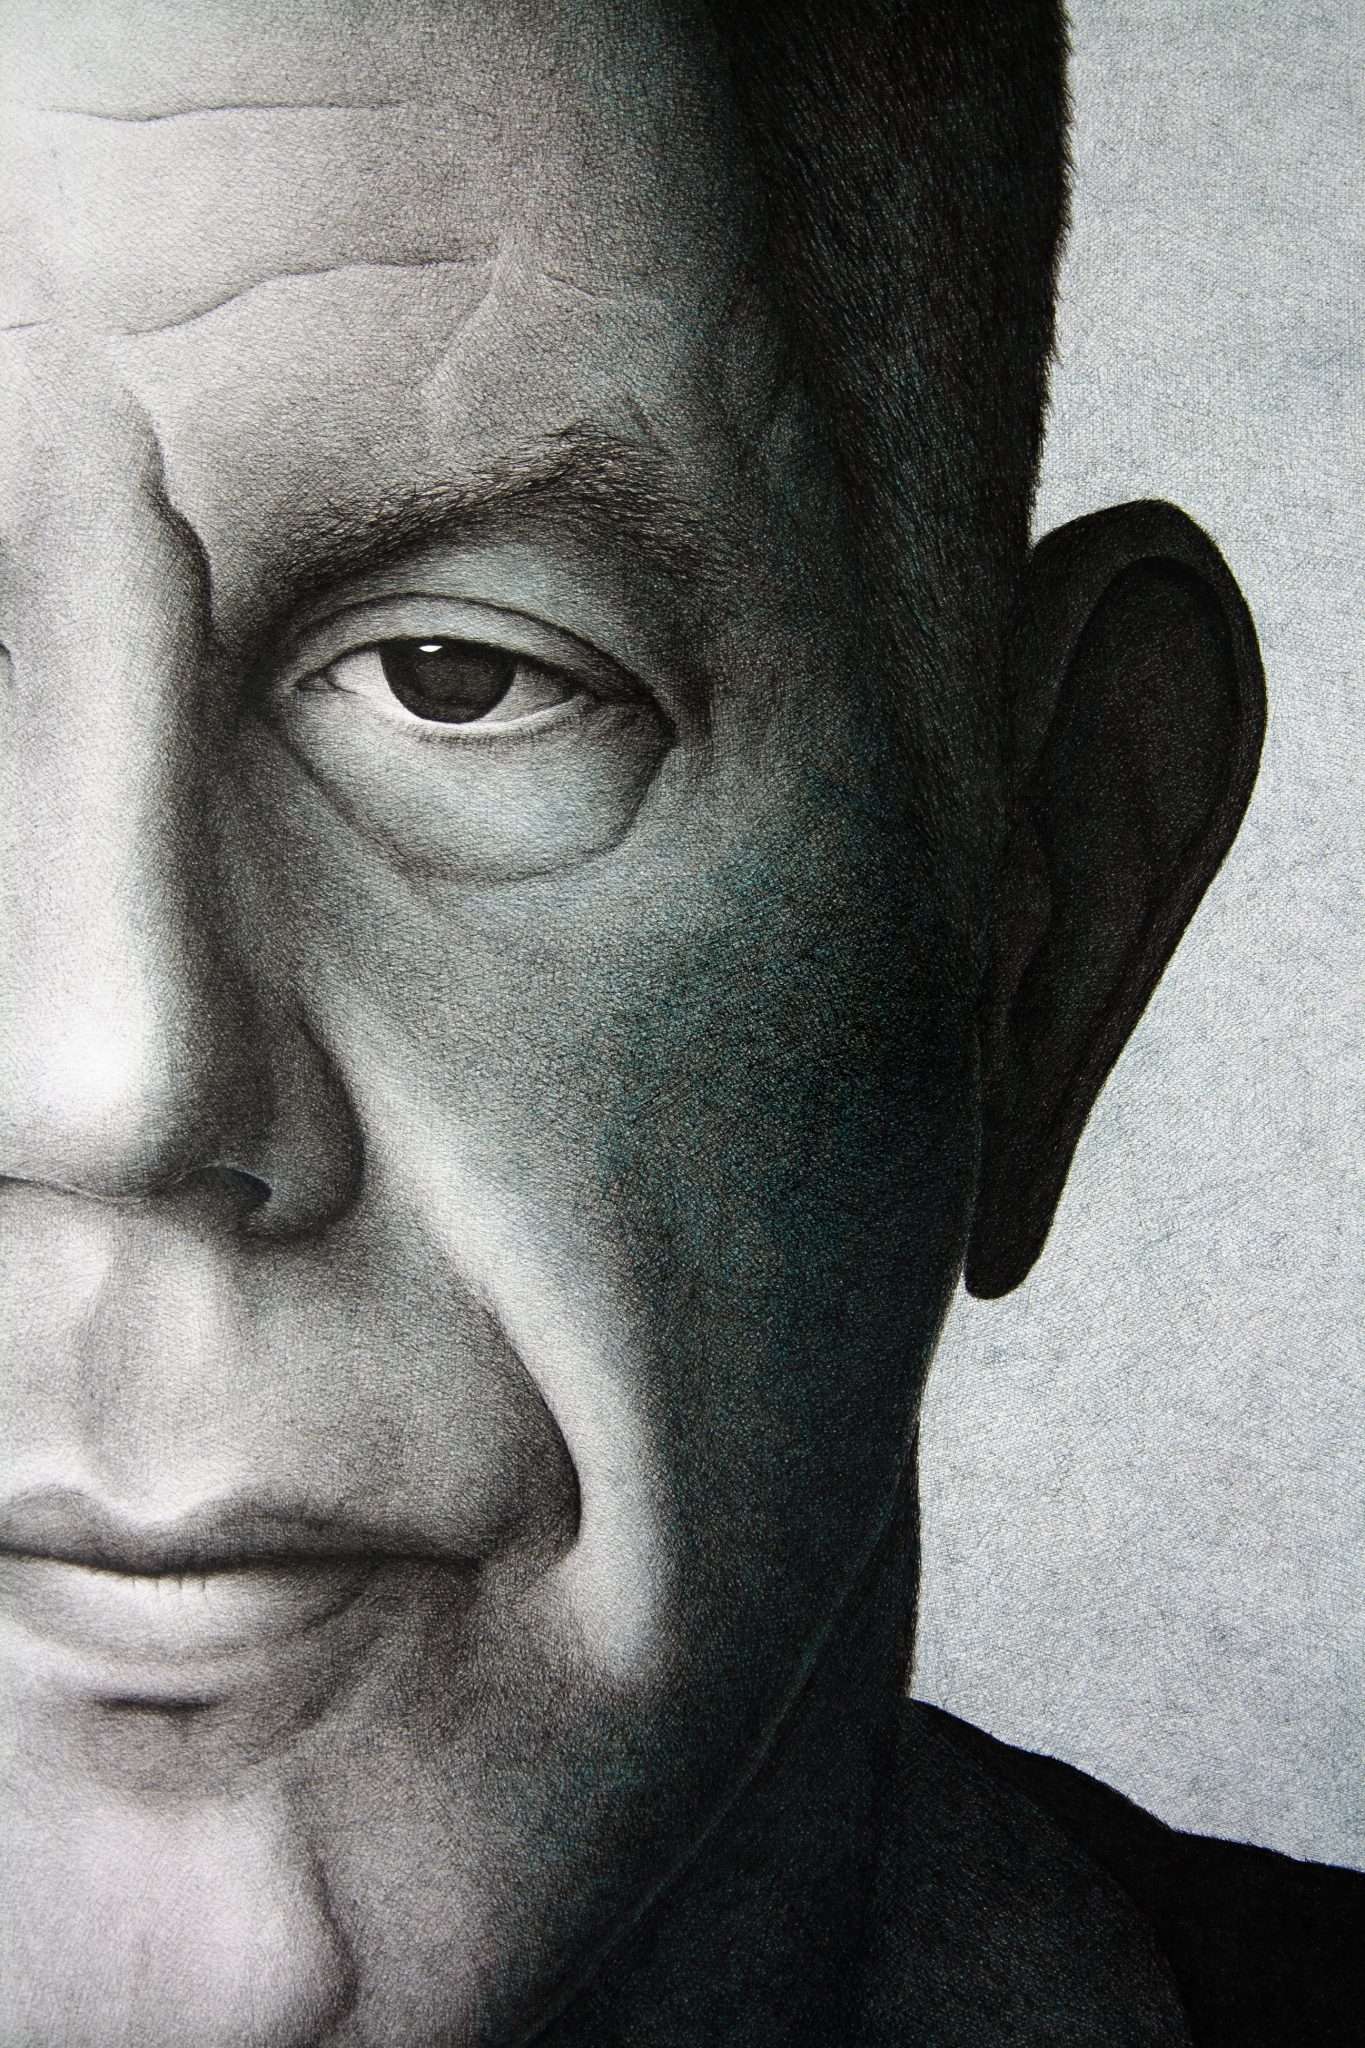 Anthony Bourdain portrait